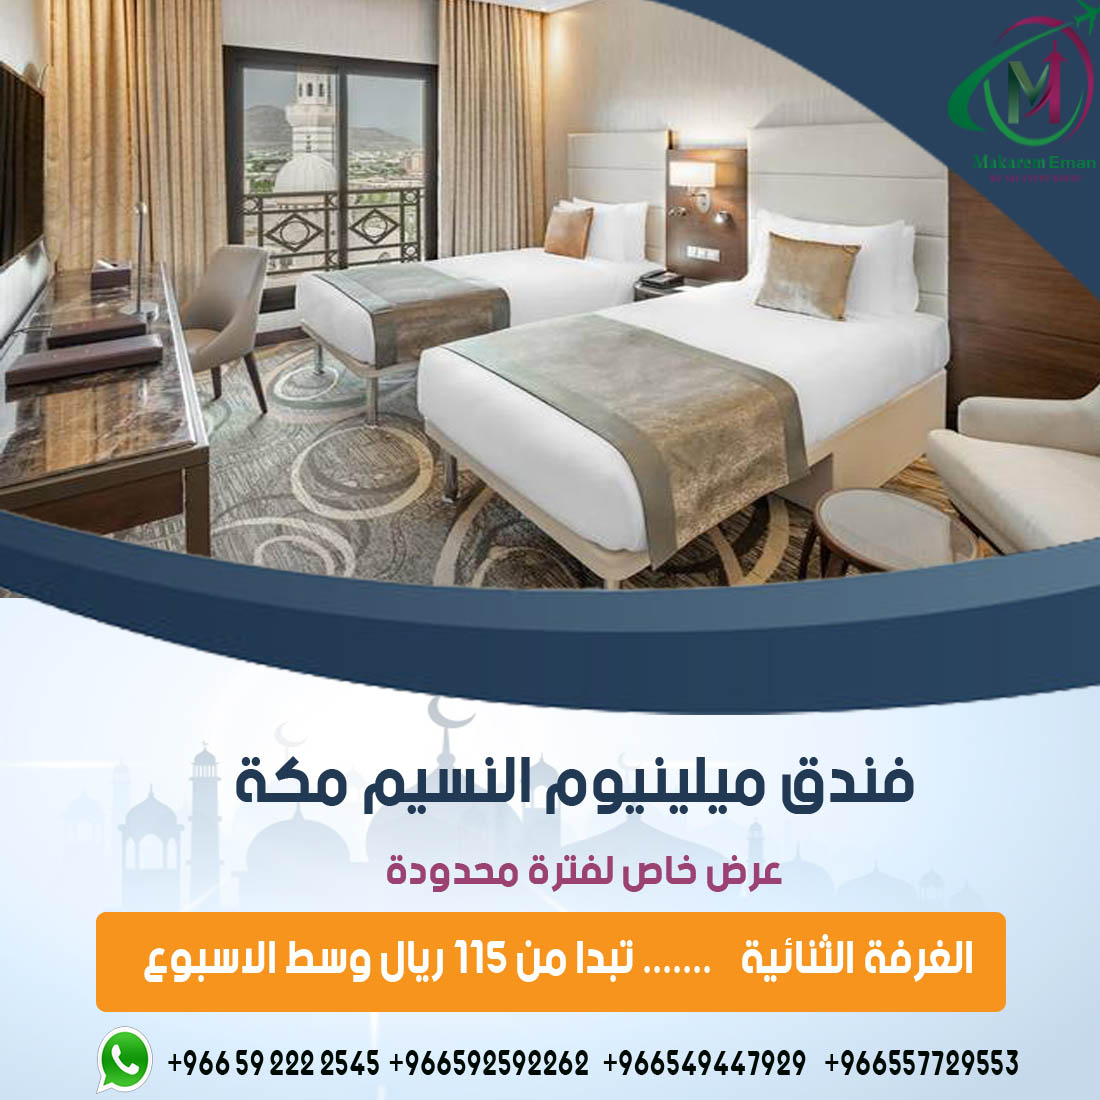 ارخص عروض فنادق مكة خمس نجوم اقوي عروض وخصومات شهر #سبتمبر من #مكارم_ايمان للسفر والسياحة